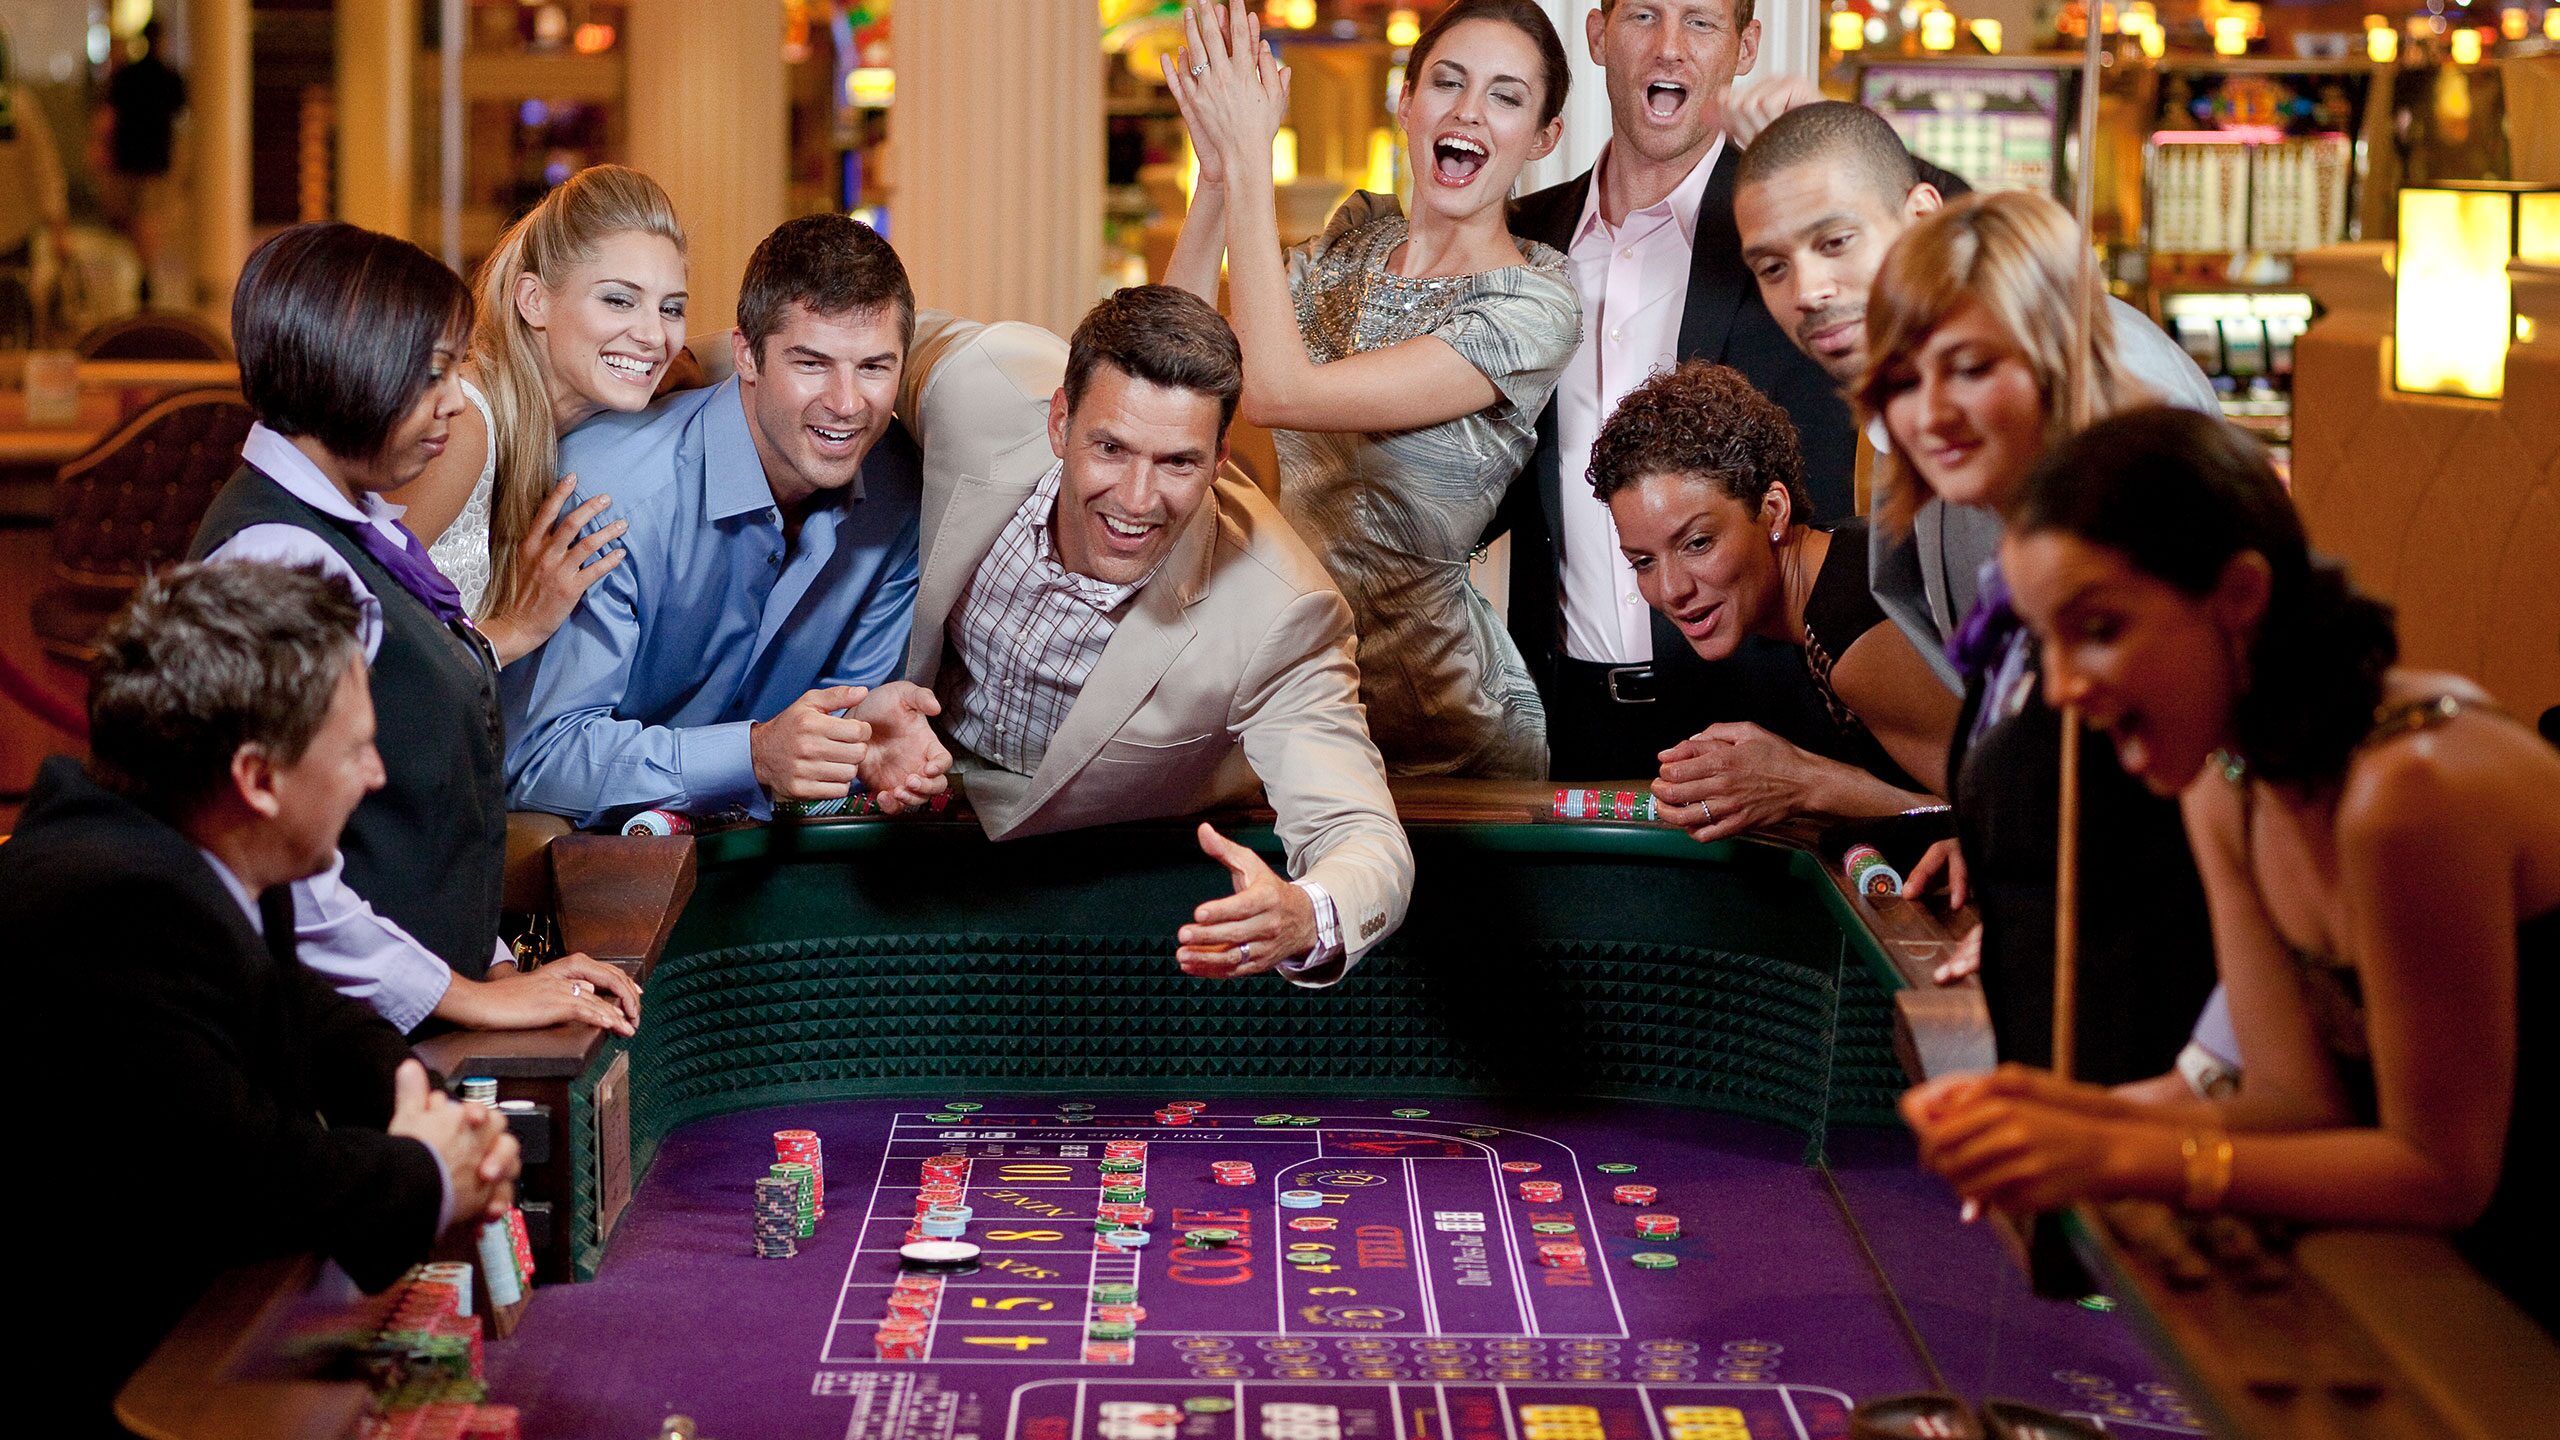 People play around. Казино на круизном лайнере. Развлечения в гостинице. Фотосессия в казино. Люди в казино.